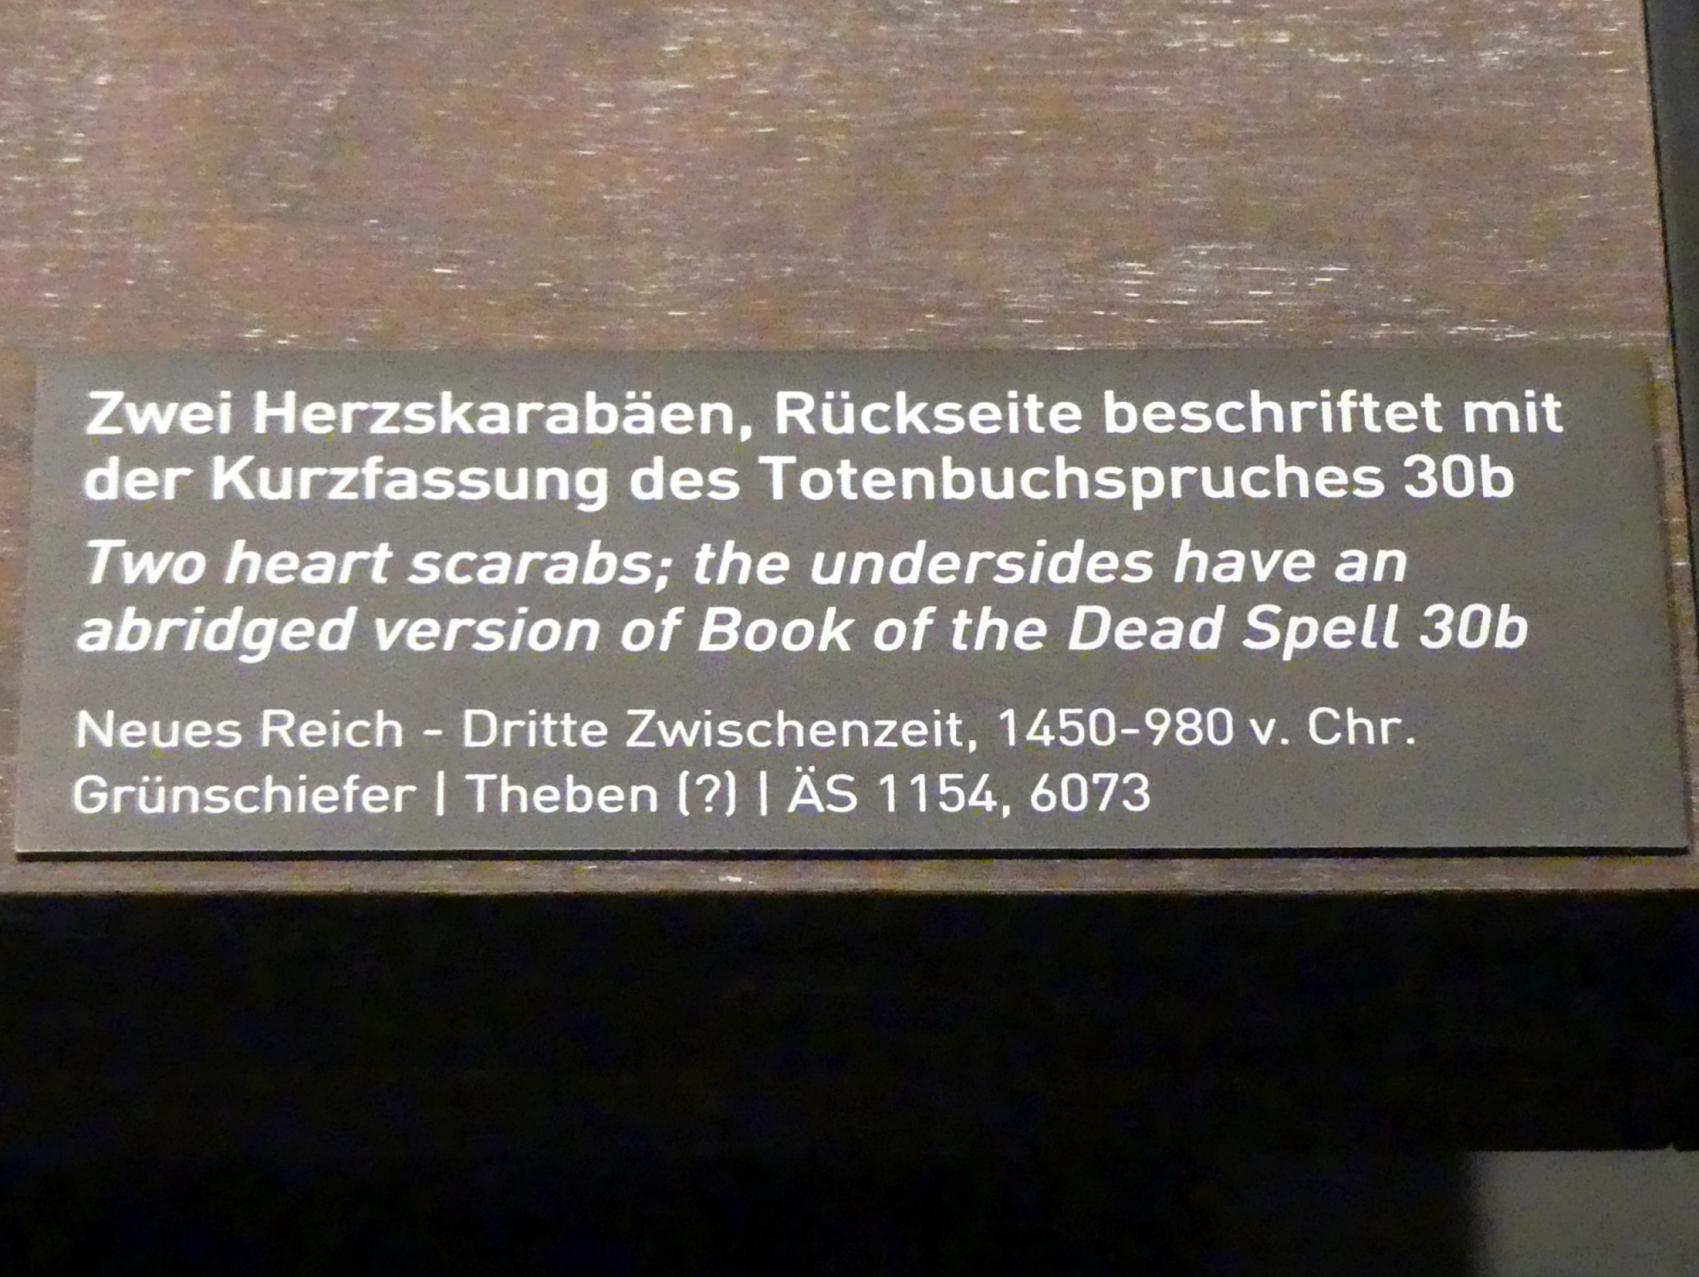 Zwei Herzskarabäen, Rückseite beschriftet mit der Kurzfassung des Totenbuchspruches 30b, 1450 - 980 v. Chr., Bild 2/2